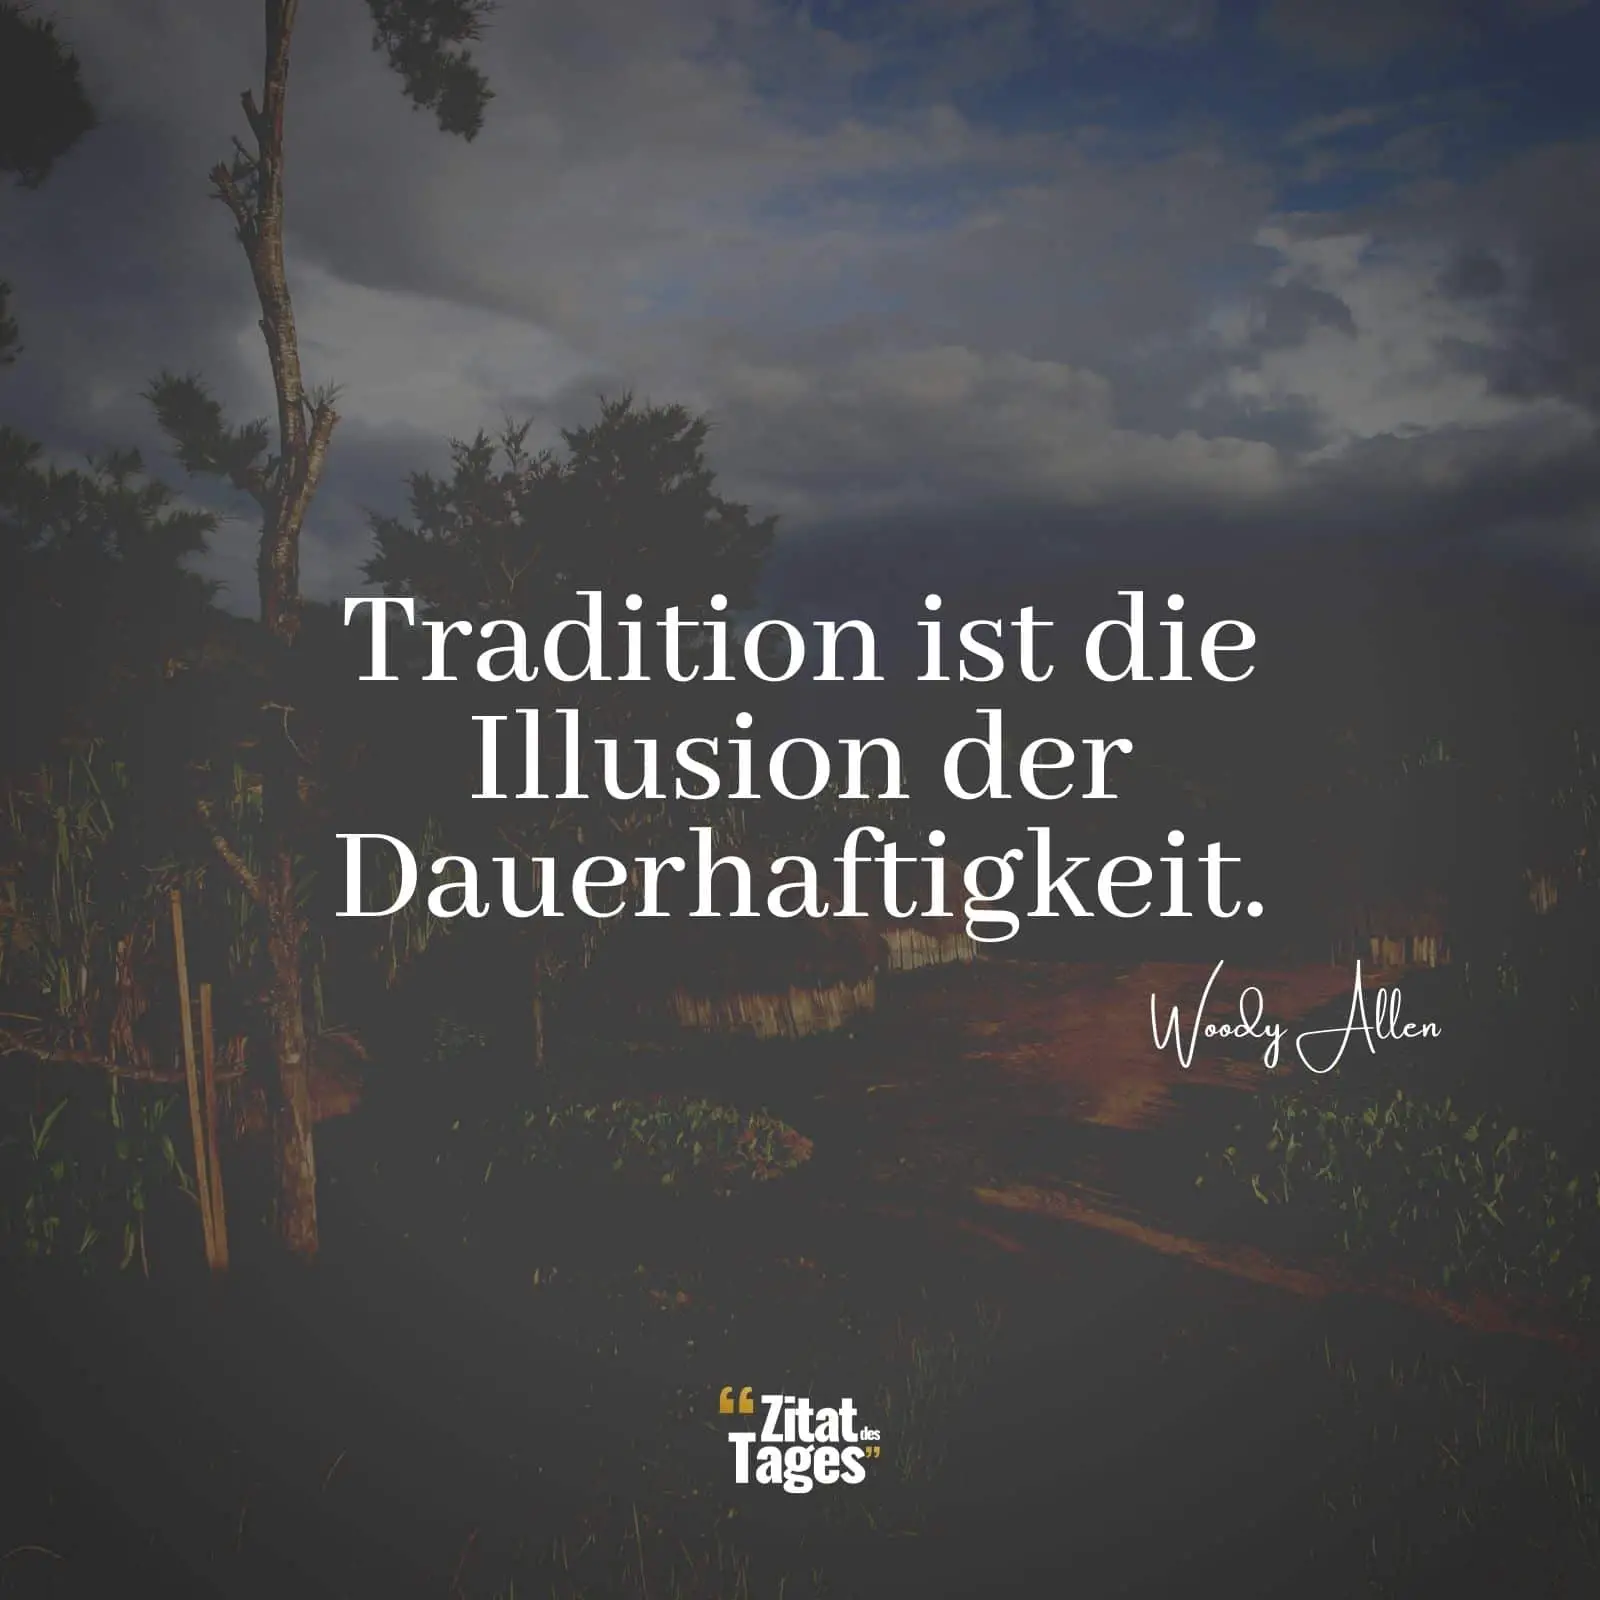 Tradition ist die Illusion der Dauerhaftigkeit. - Woody Allen